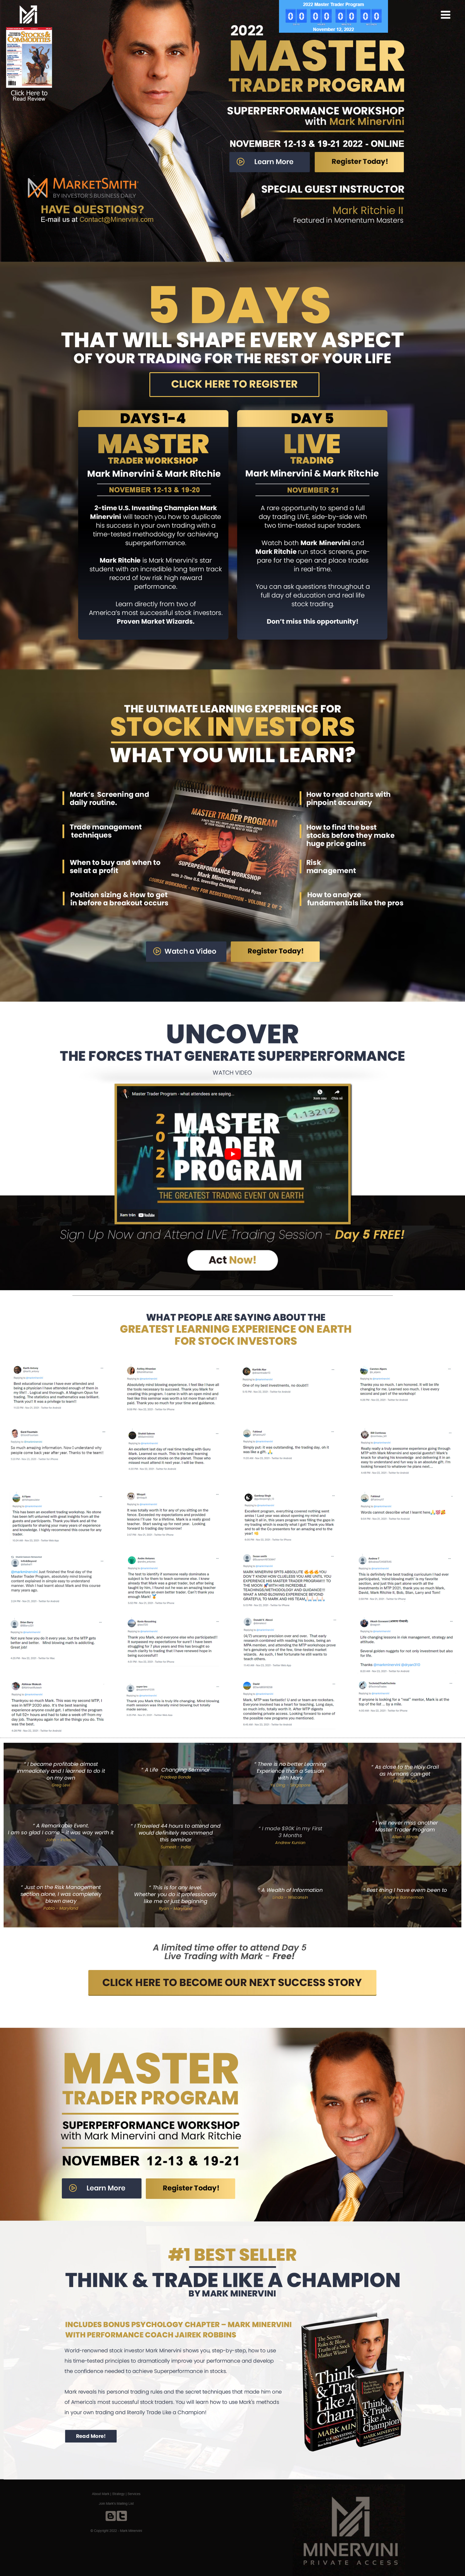 Mark Minervini - Master Trader Program 2022